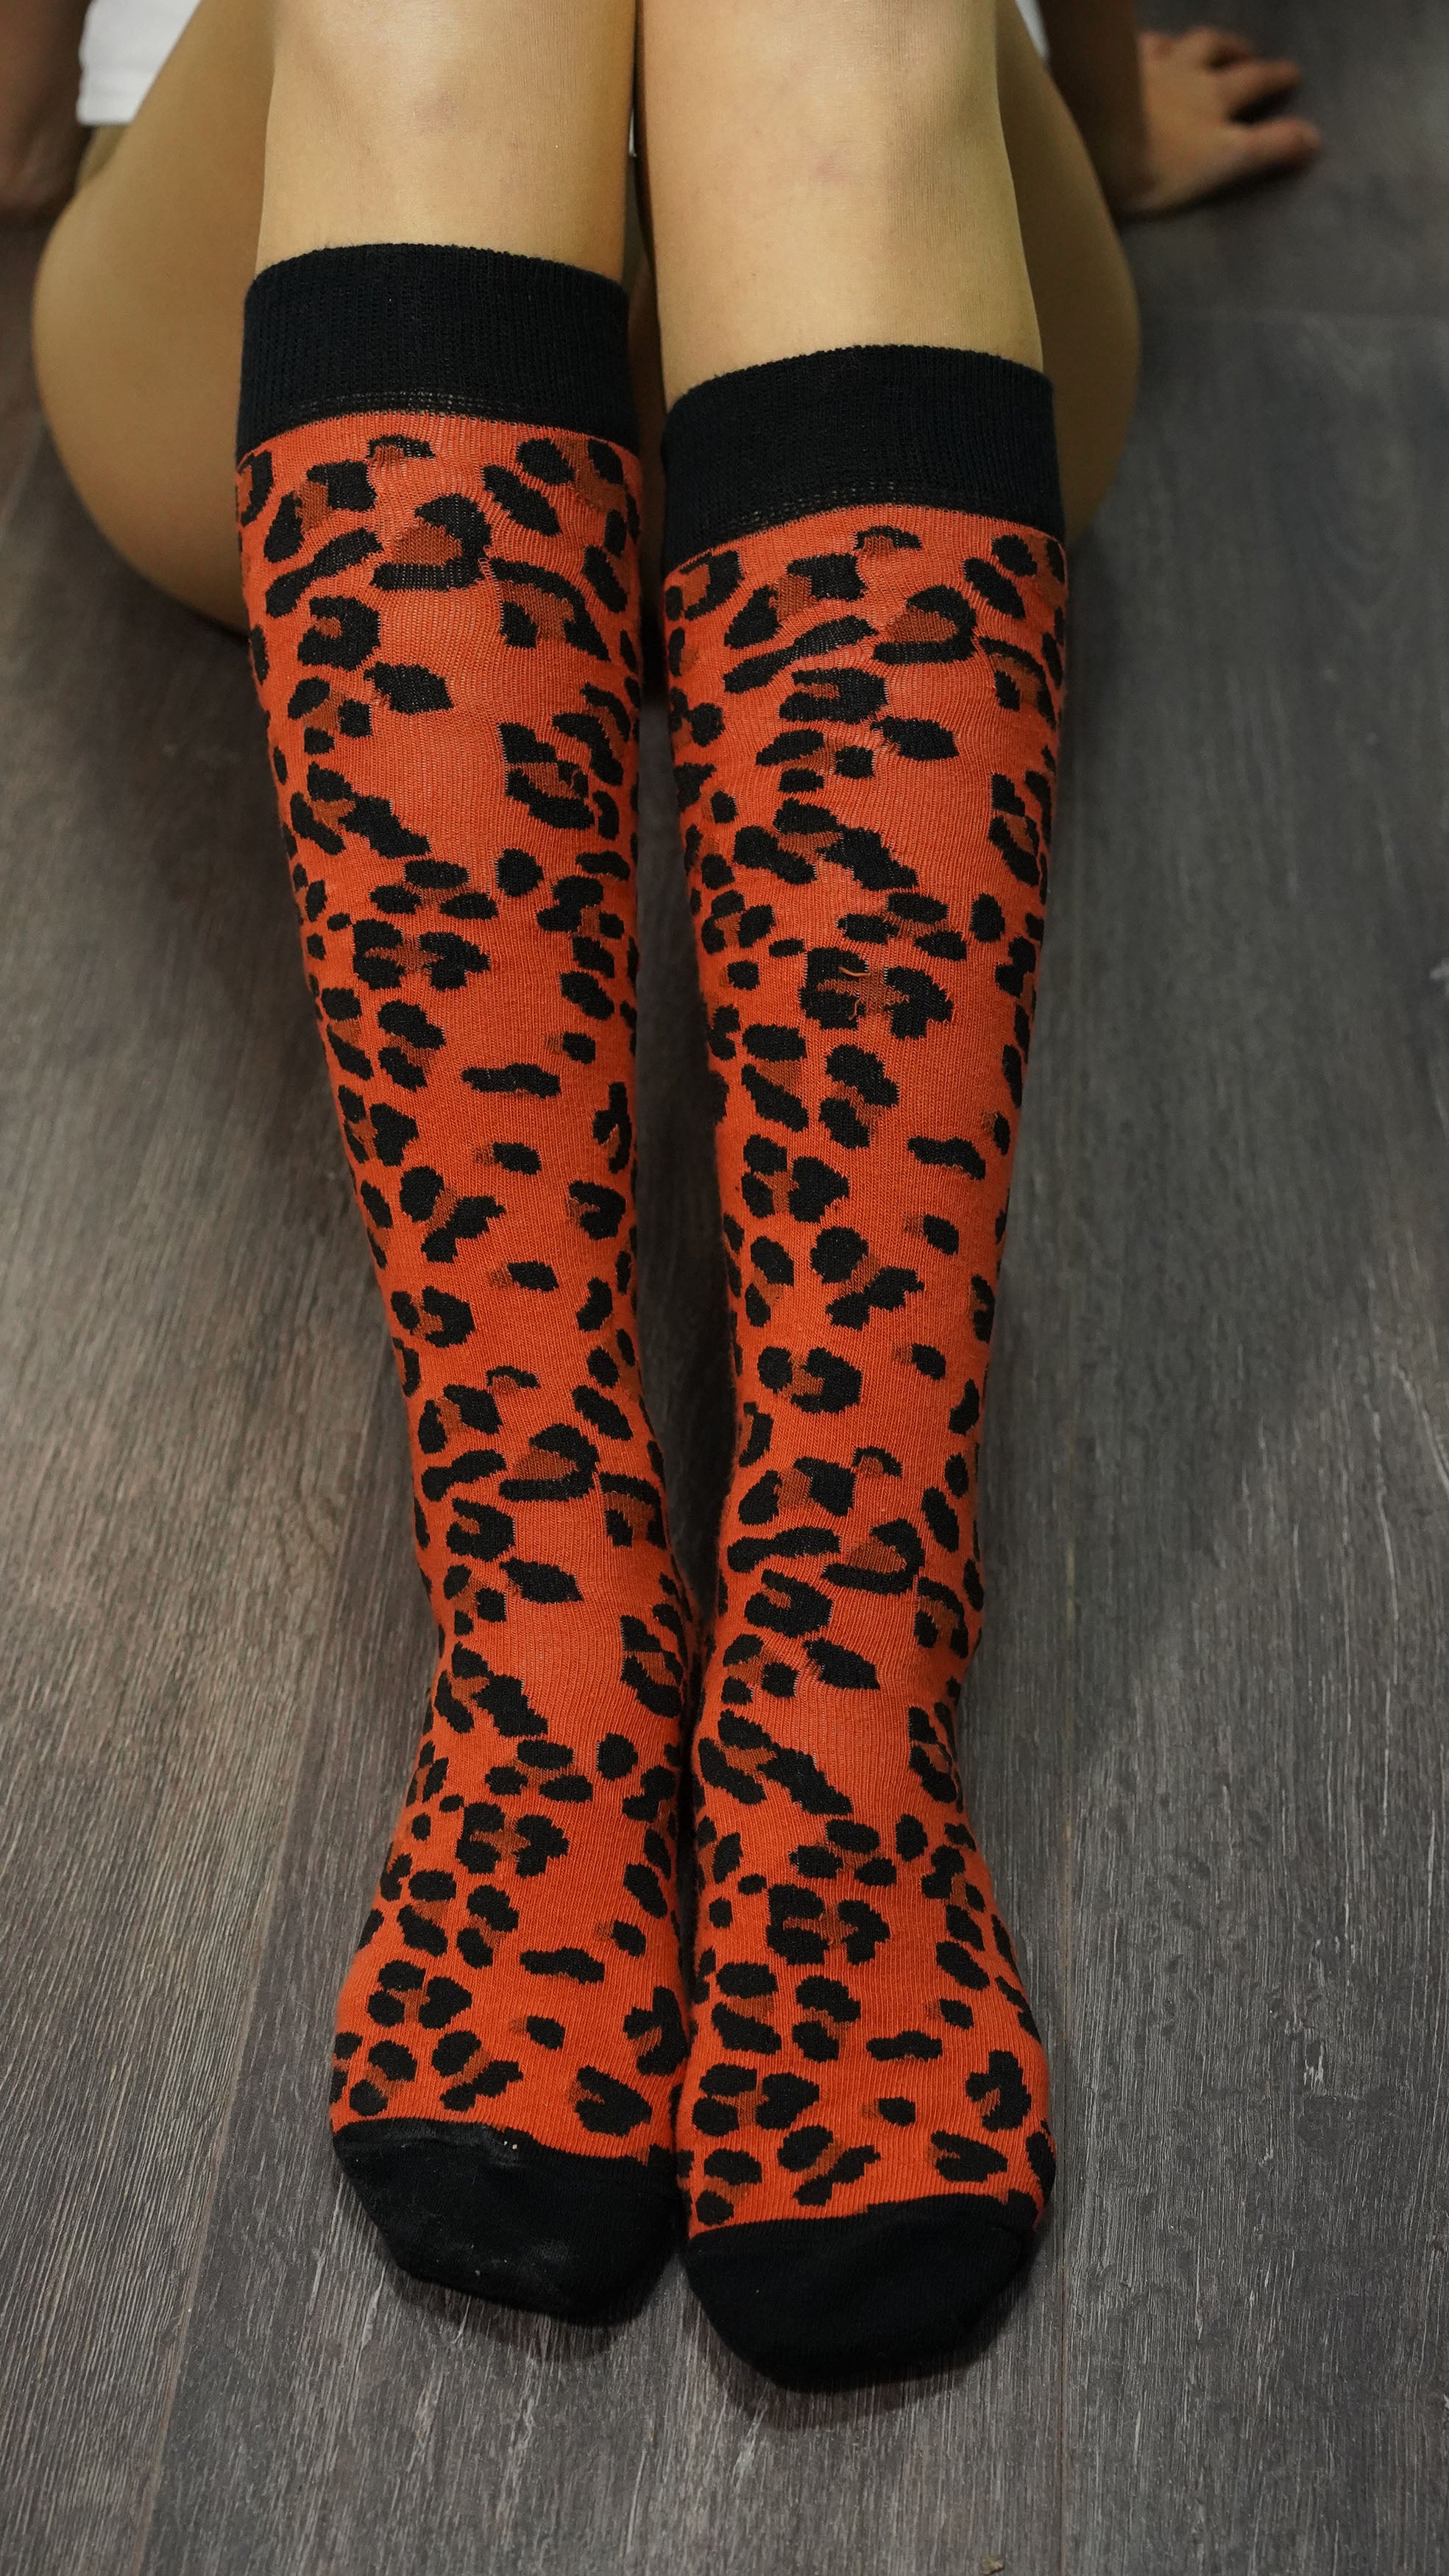 Women's Leopard Knee High Socks